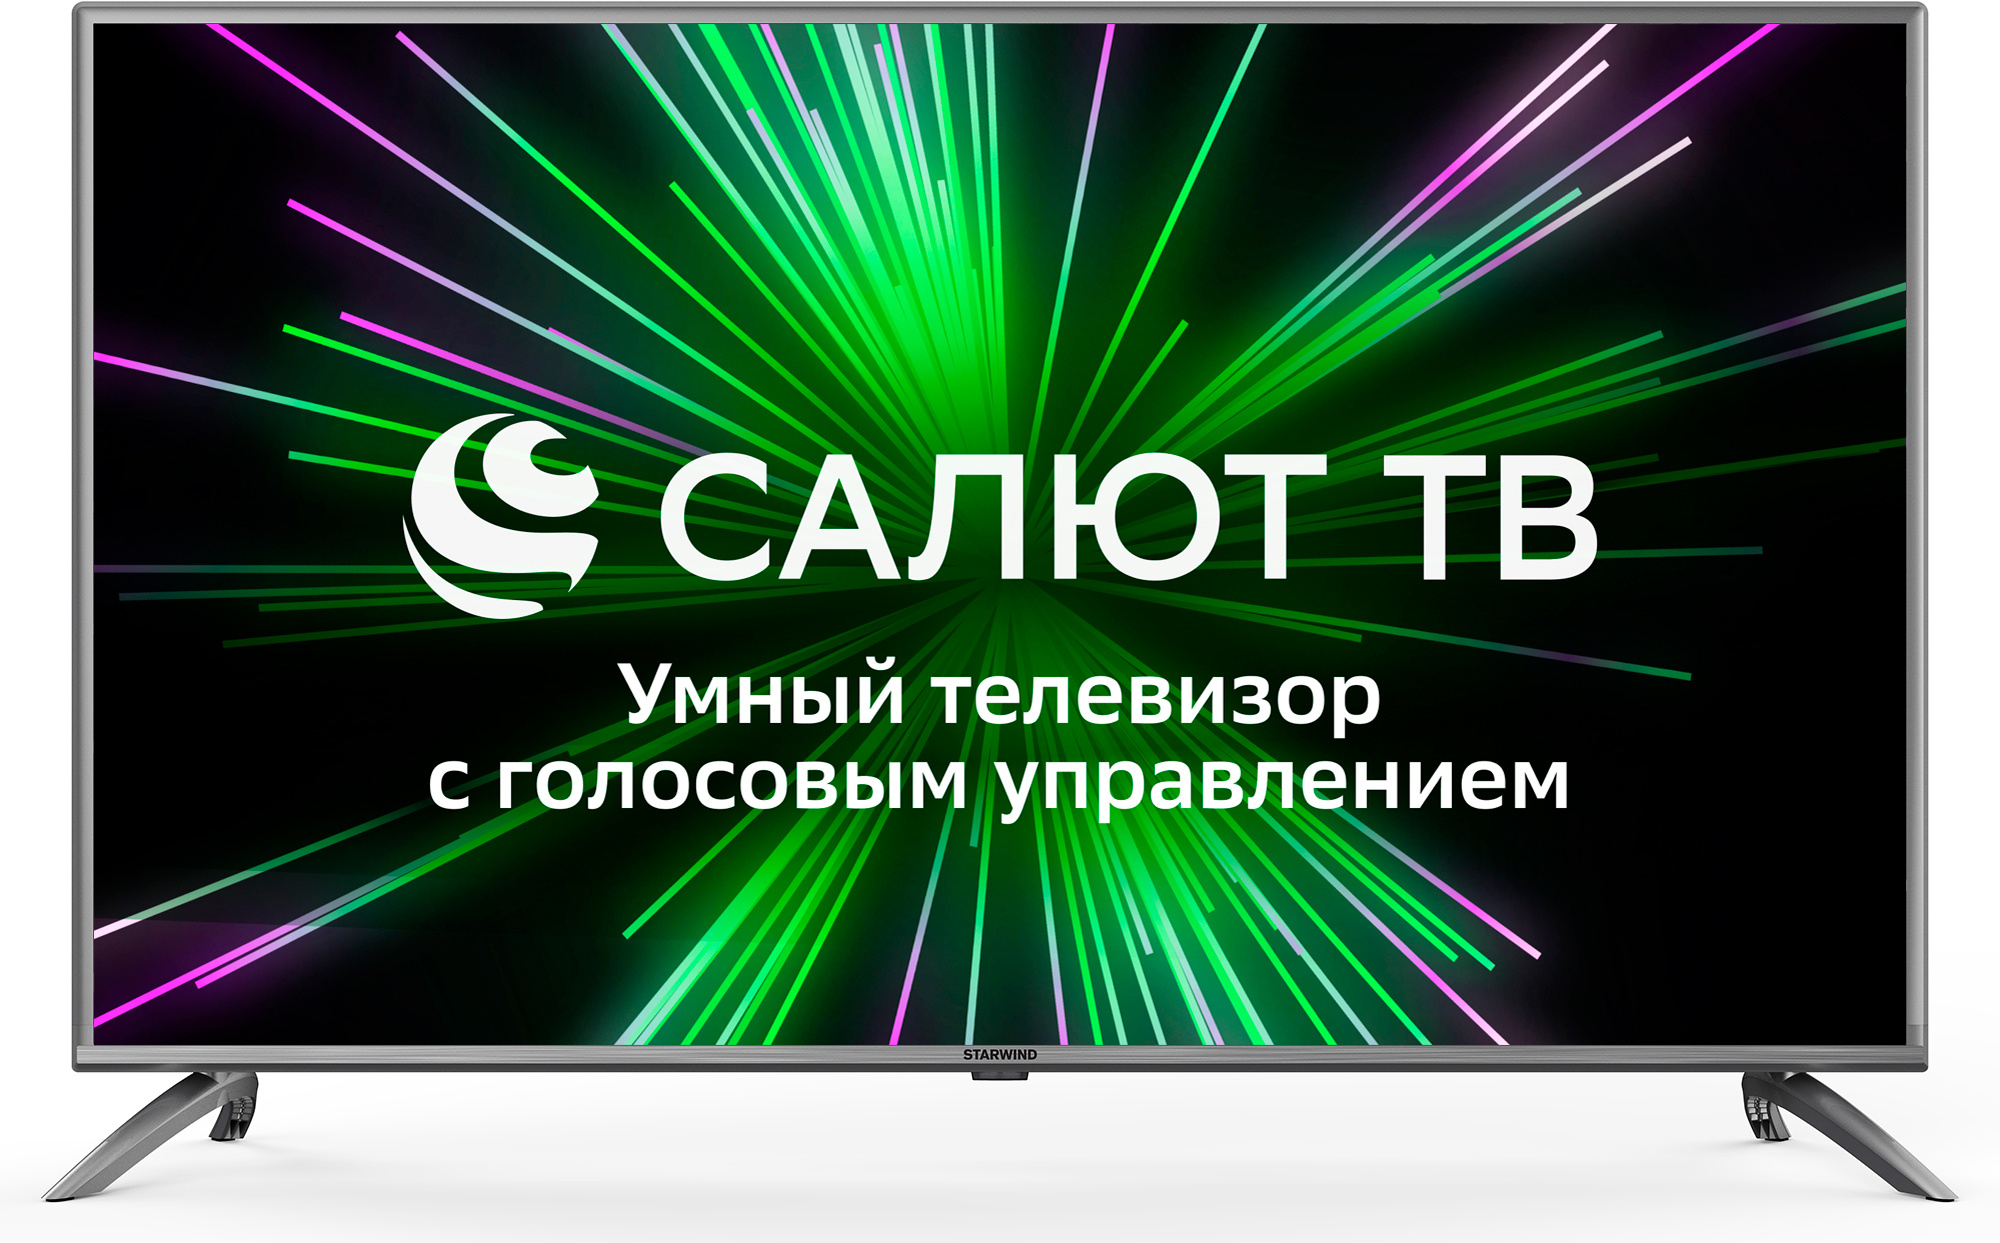 Телевизор Starwind Салют ТВ SW-LED50UB403, 50", LED, 4K Ultra HD, стальной от магазина Старвинд